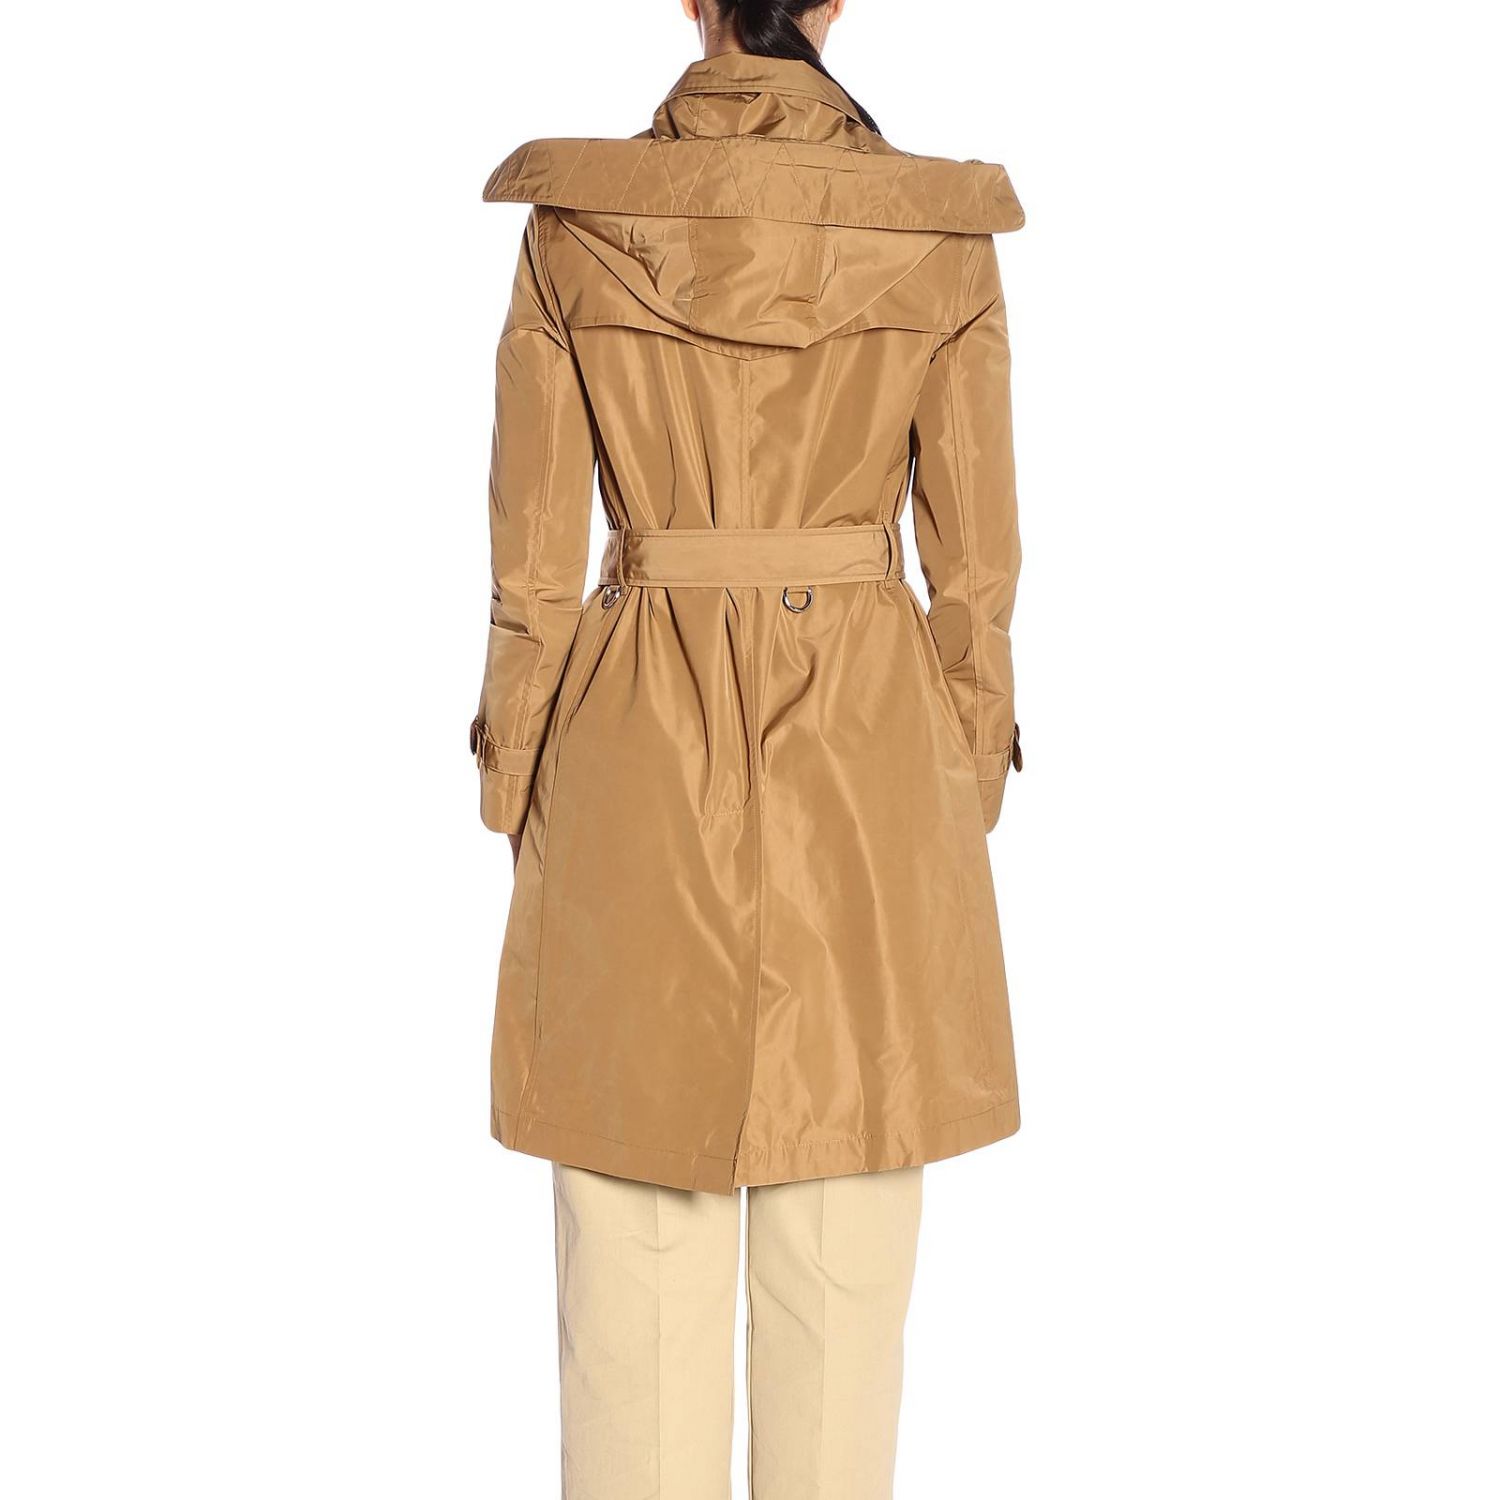 BURBERRY: Coat women | Coat Burberry Women Beige | Coat Burberry ...